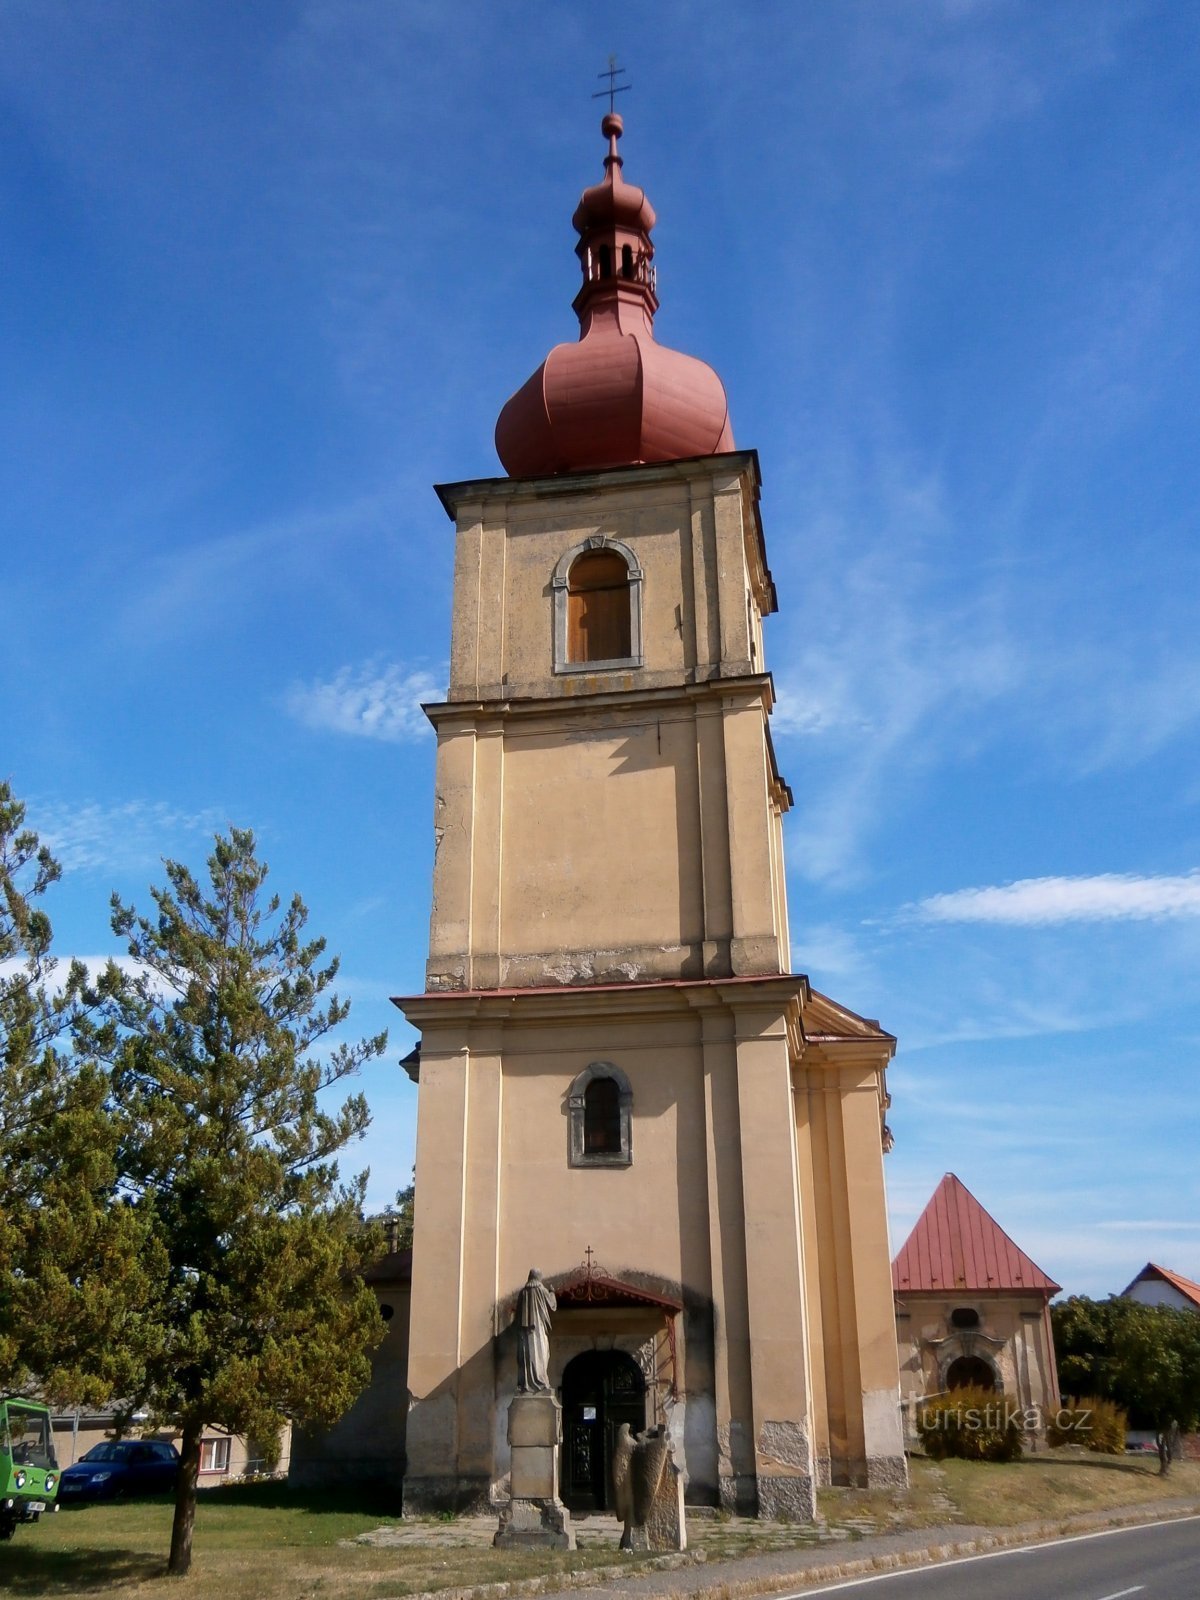 Church of St. Jiljí, abbot (Chvalkovice)